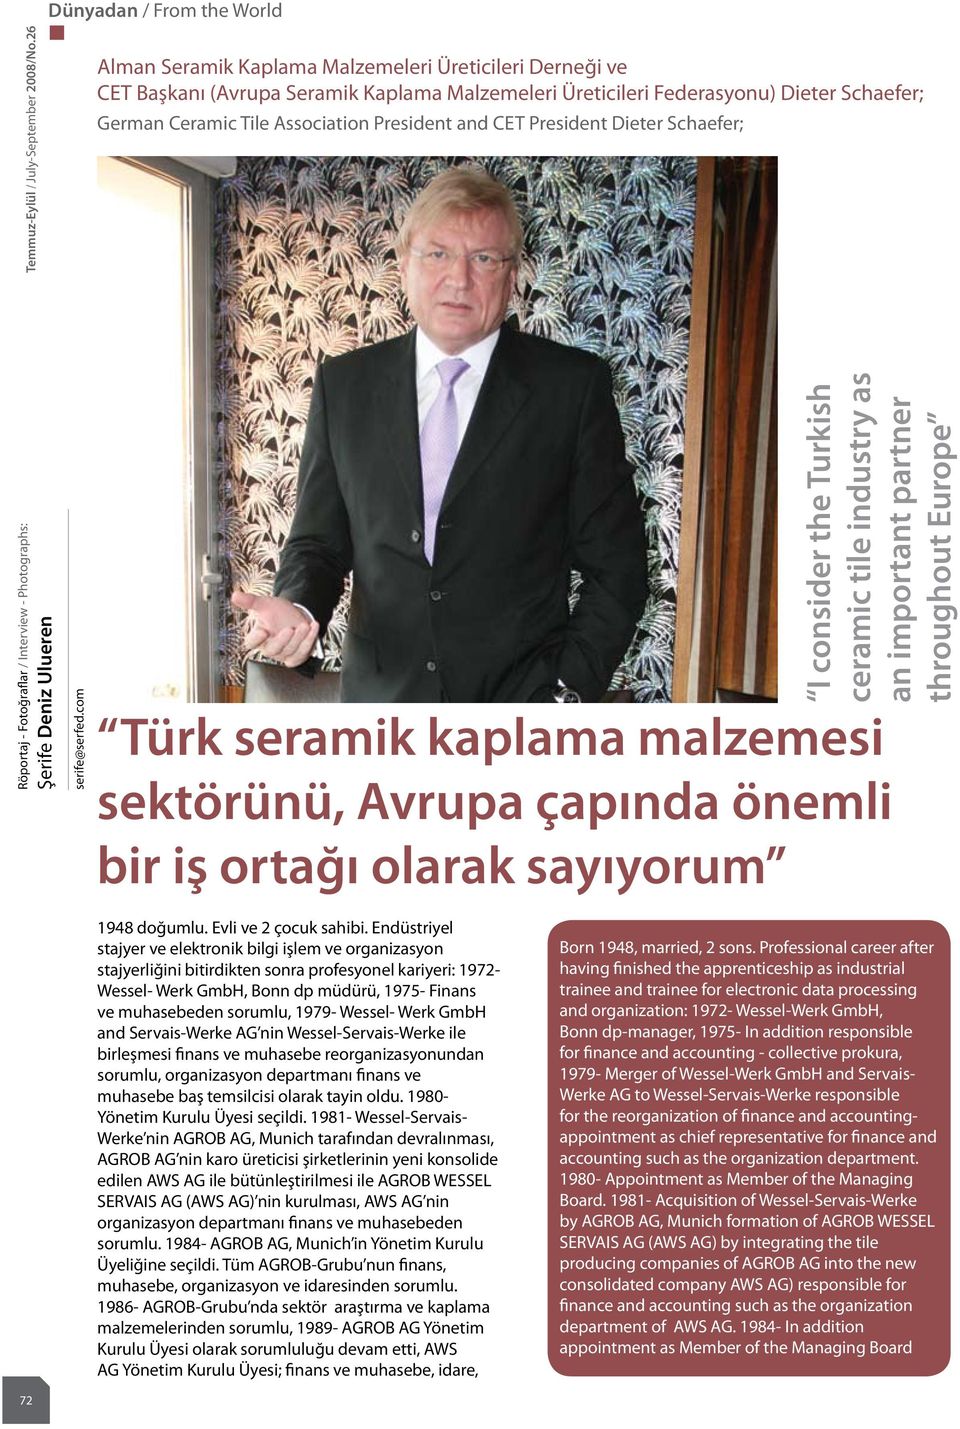 President Dieter Schaefer; Röportaj - Fotoğraflar / Interview - Photographs: Şerife Deniz Ulueren serife@serfed.